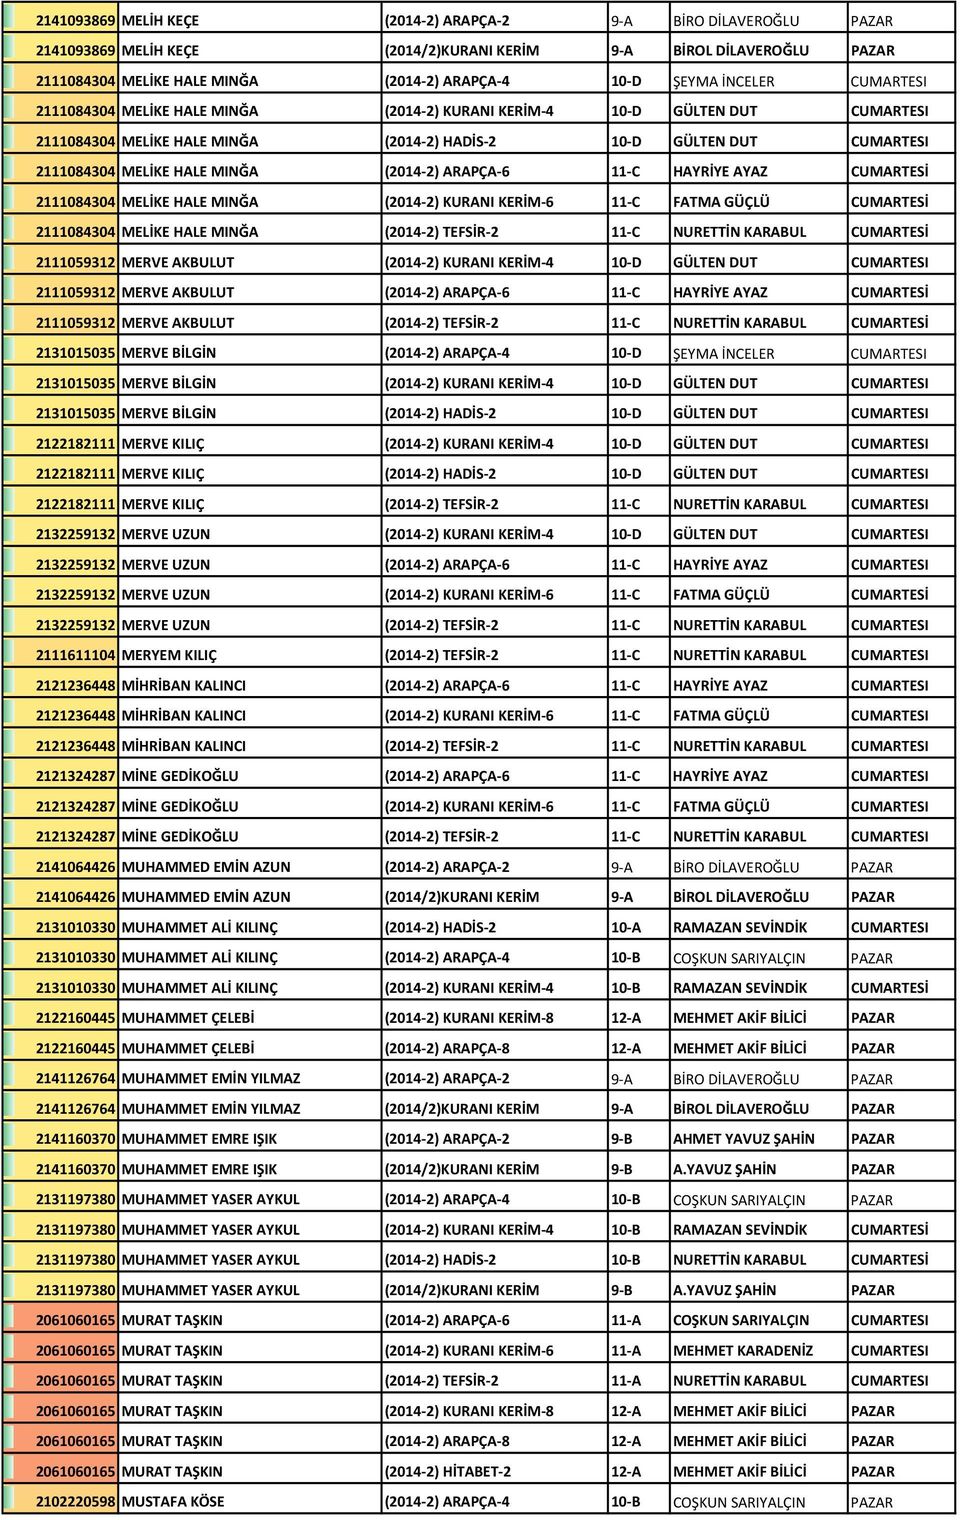 (2014-2) ARAPÇA-6 11-C HAYRİYE AYAZ CUMARTESİ 2111084304 MELİKE HALE MINĞA (2014-2) KURANI KERİM-6 11-C FATMA GÜÇLÜ CUMARTESİ 2111084304 MELİKE HALE MINĞA (2014-2) TEFSİR-2 11-C NURETTİN KARABUL